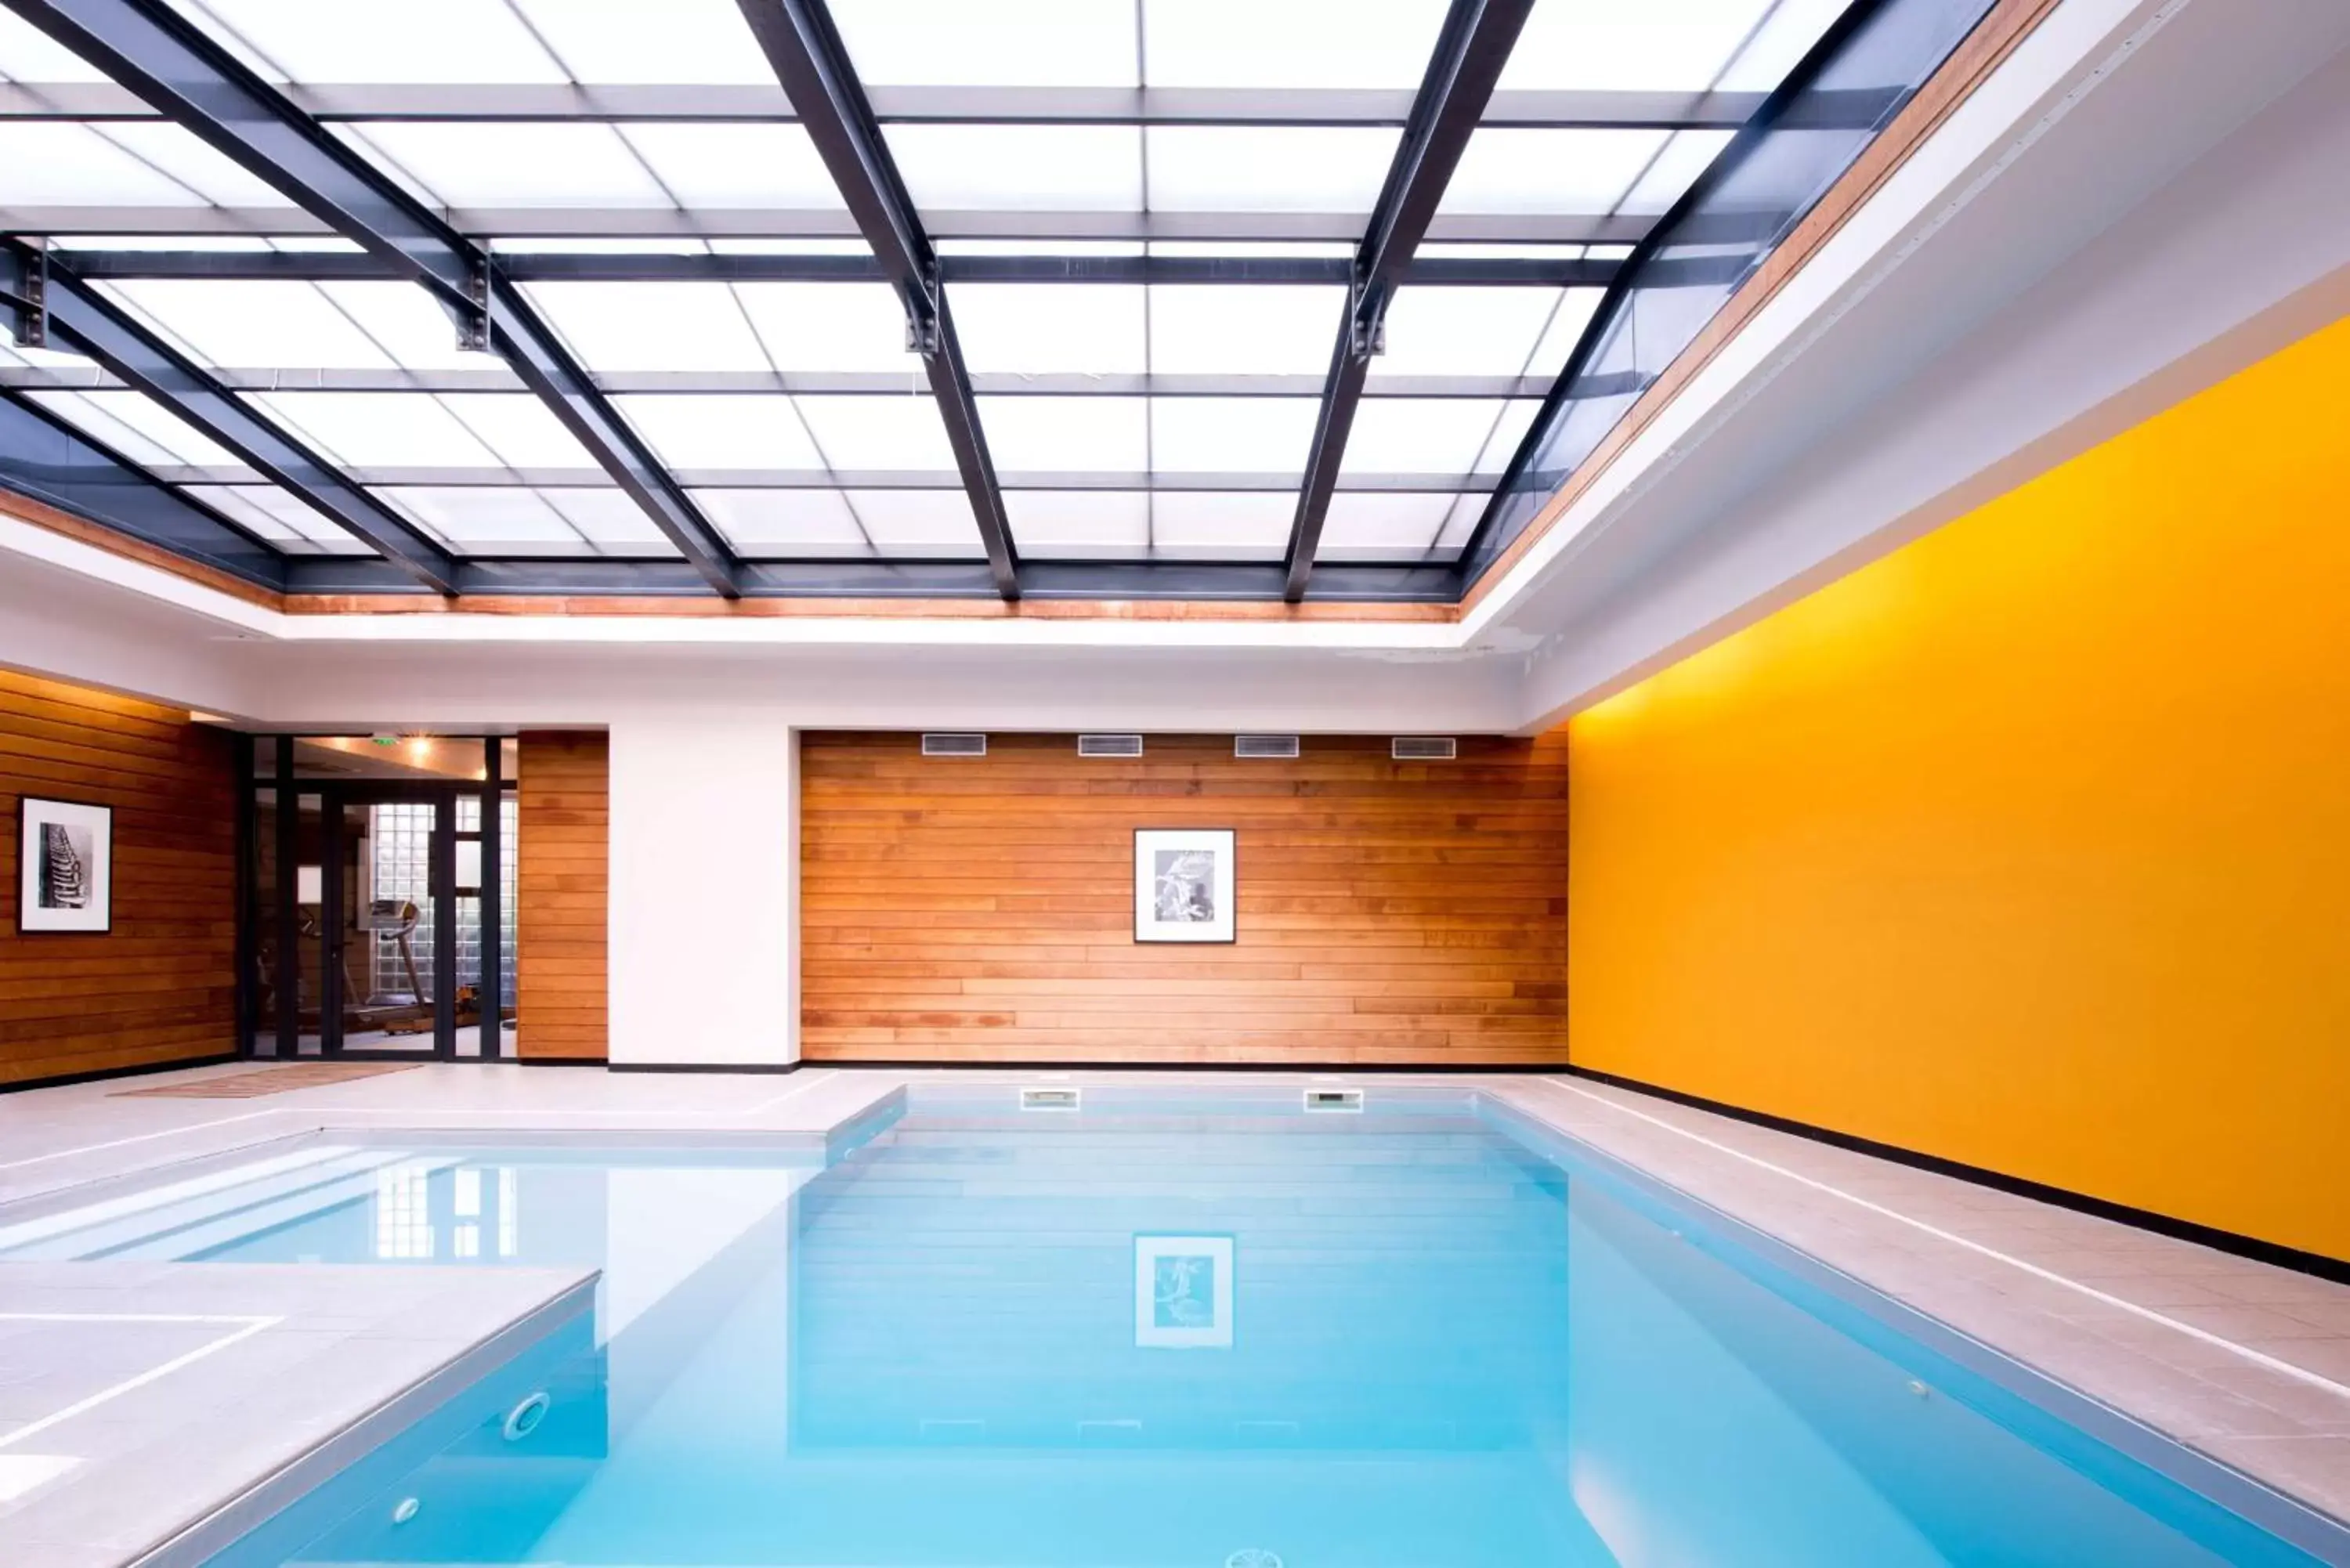 On site, Swimming Pool in Best Western Premier Hotel de la Paix